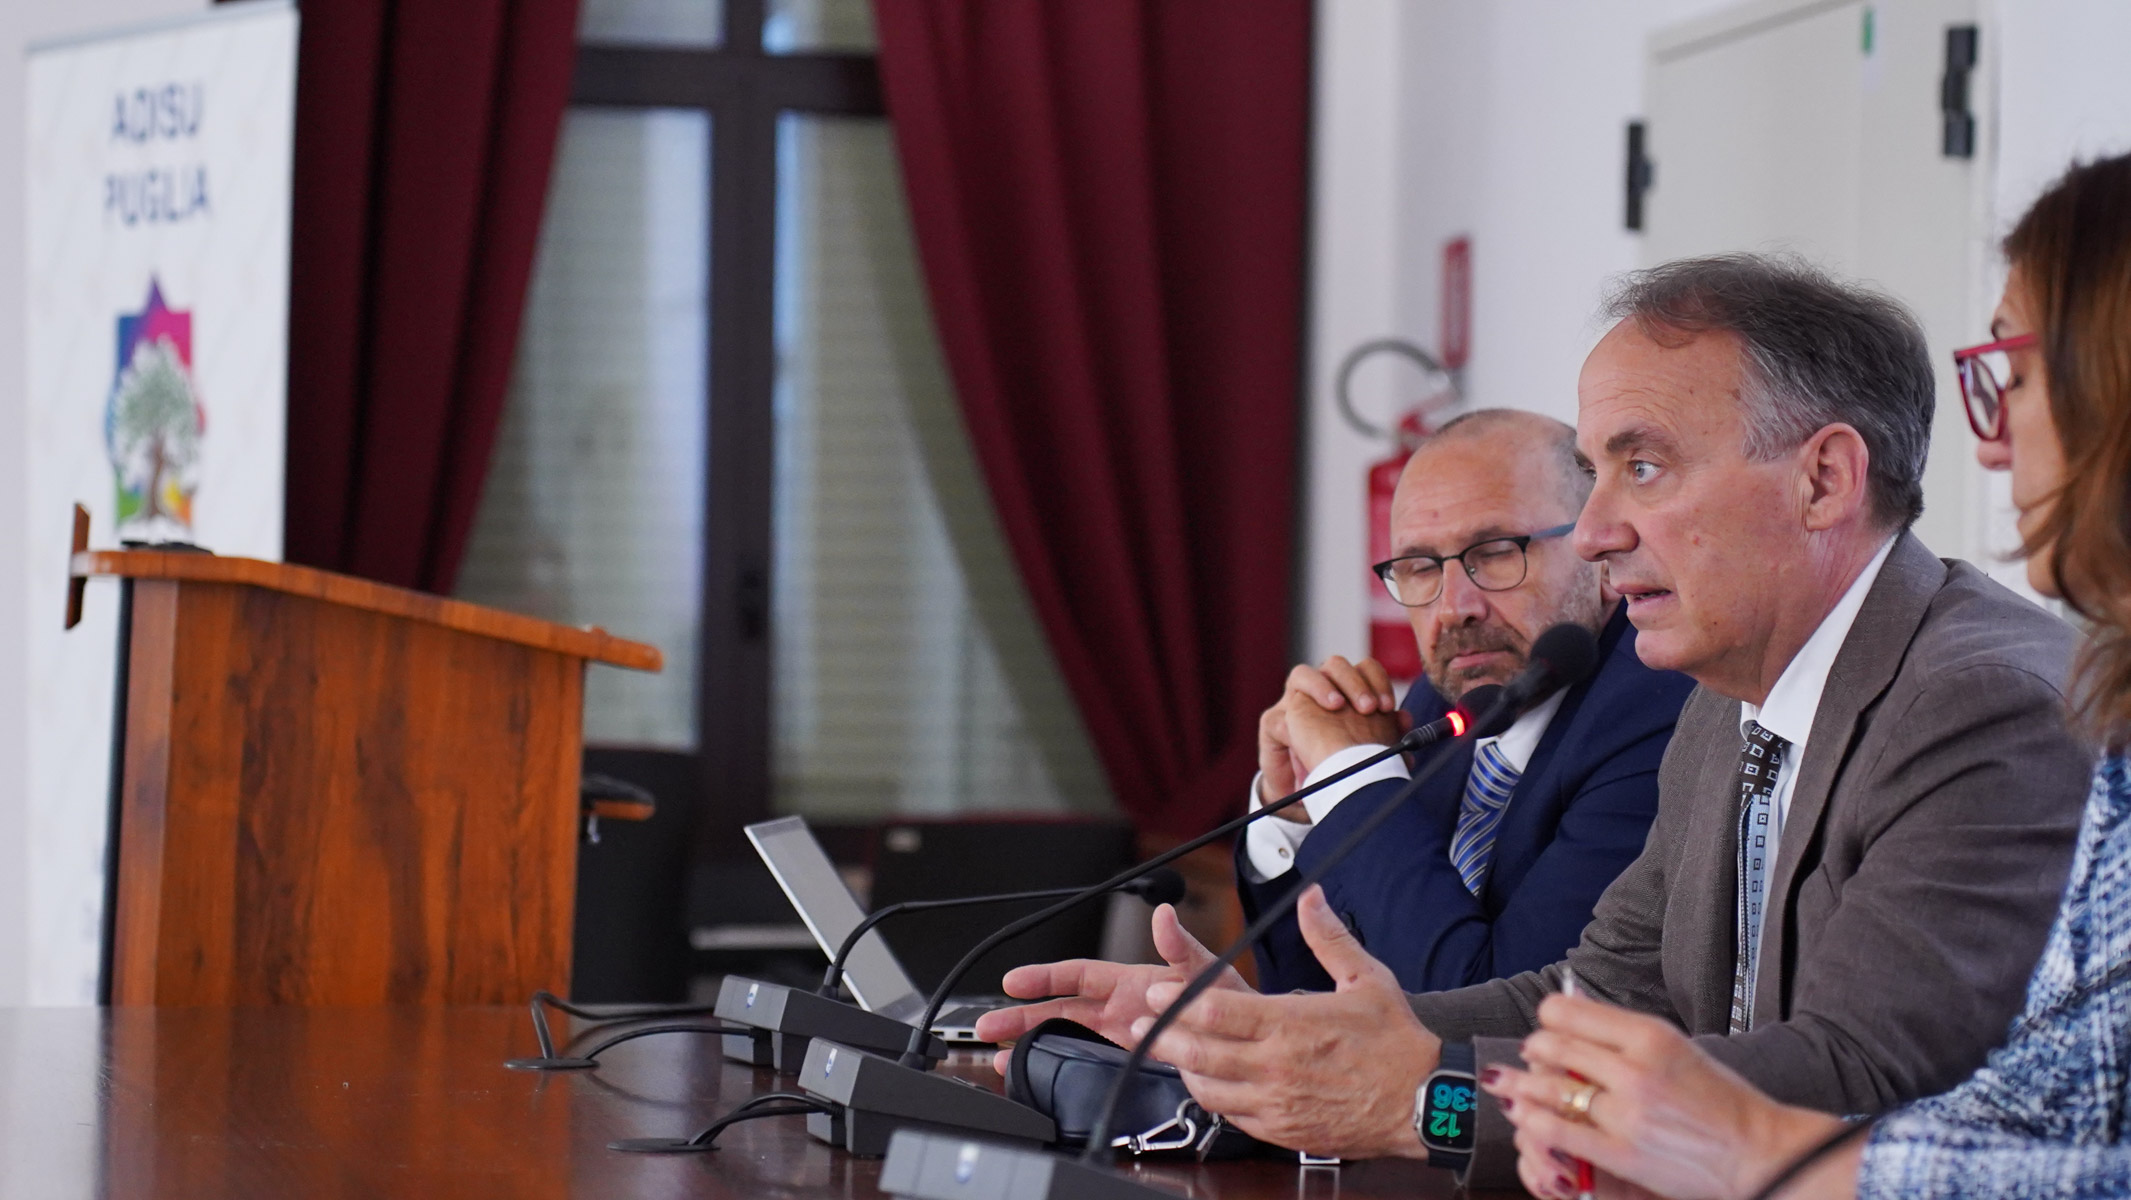 Galleria L’assessore Leo “Il presente e il futuro del diritto allo studio per una Puglia Regione Universitaria” - Diapositiva 10 di 13